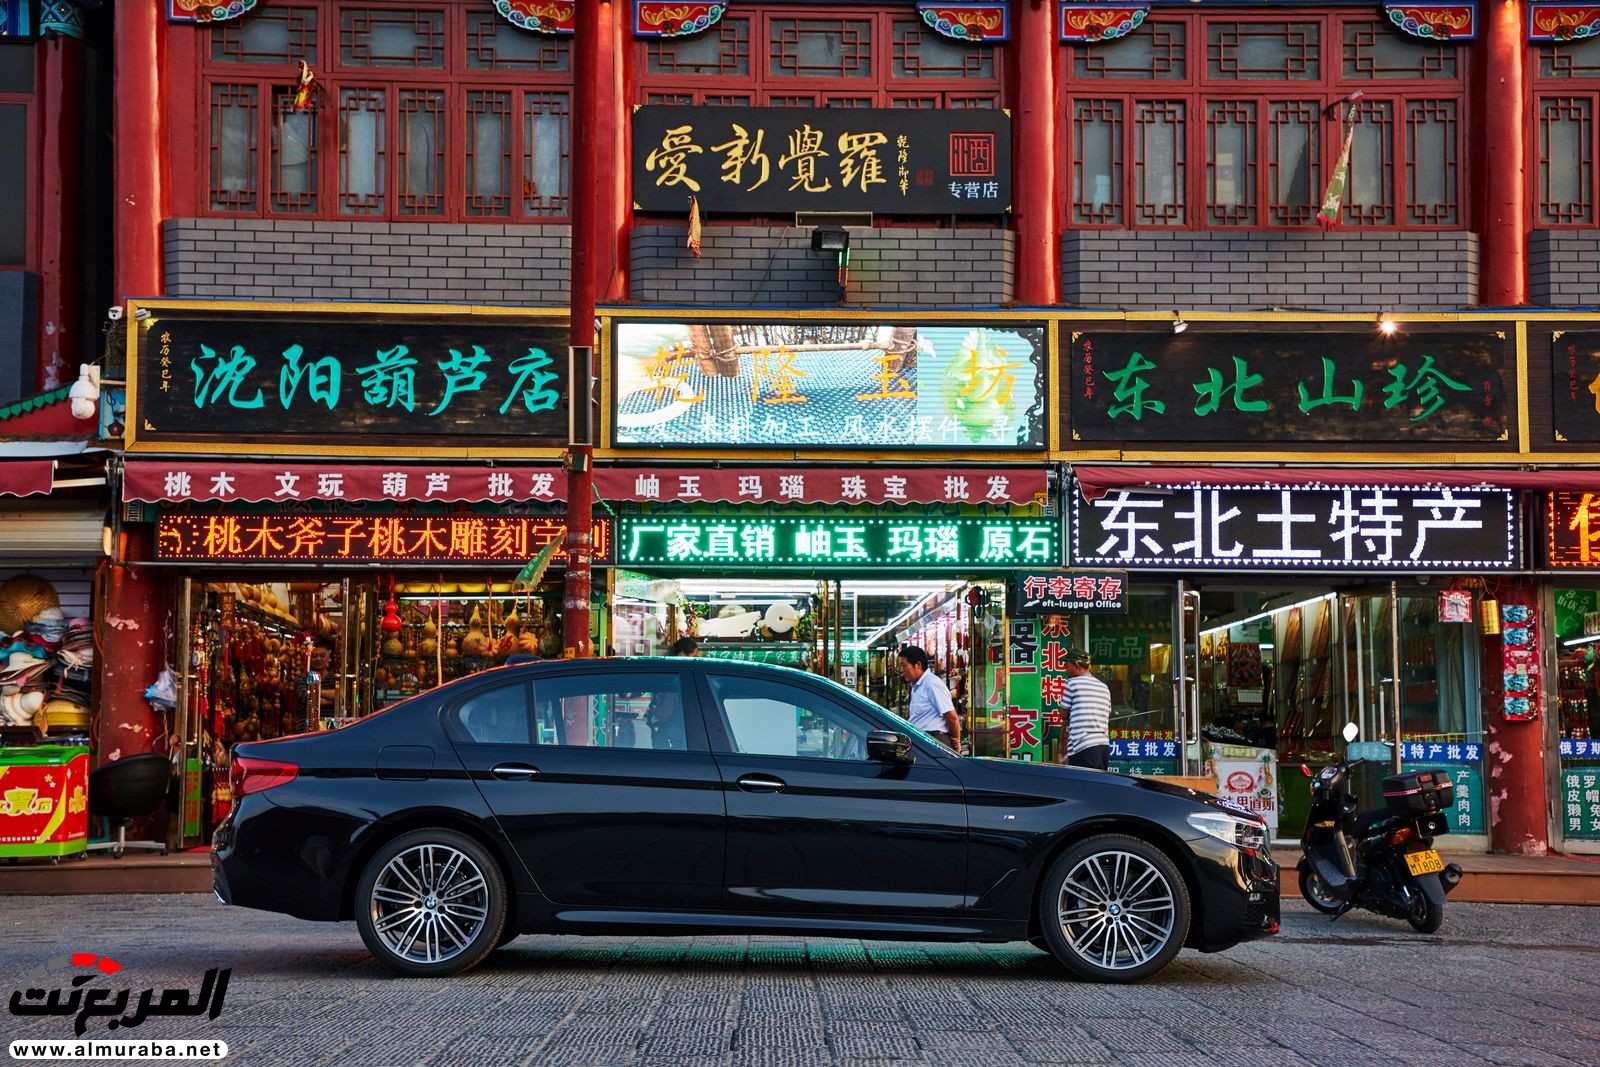 بي إم دبليو أصبحت صانعة السيارات الفاخرة الأكثر مبيعاً في الصين 20